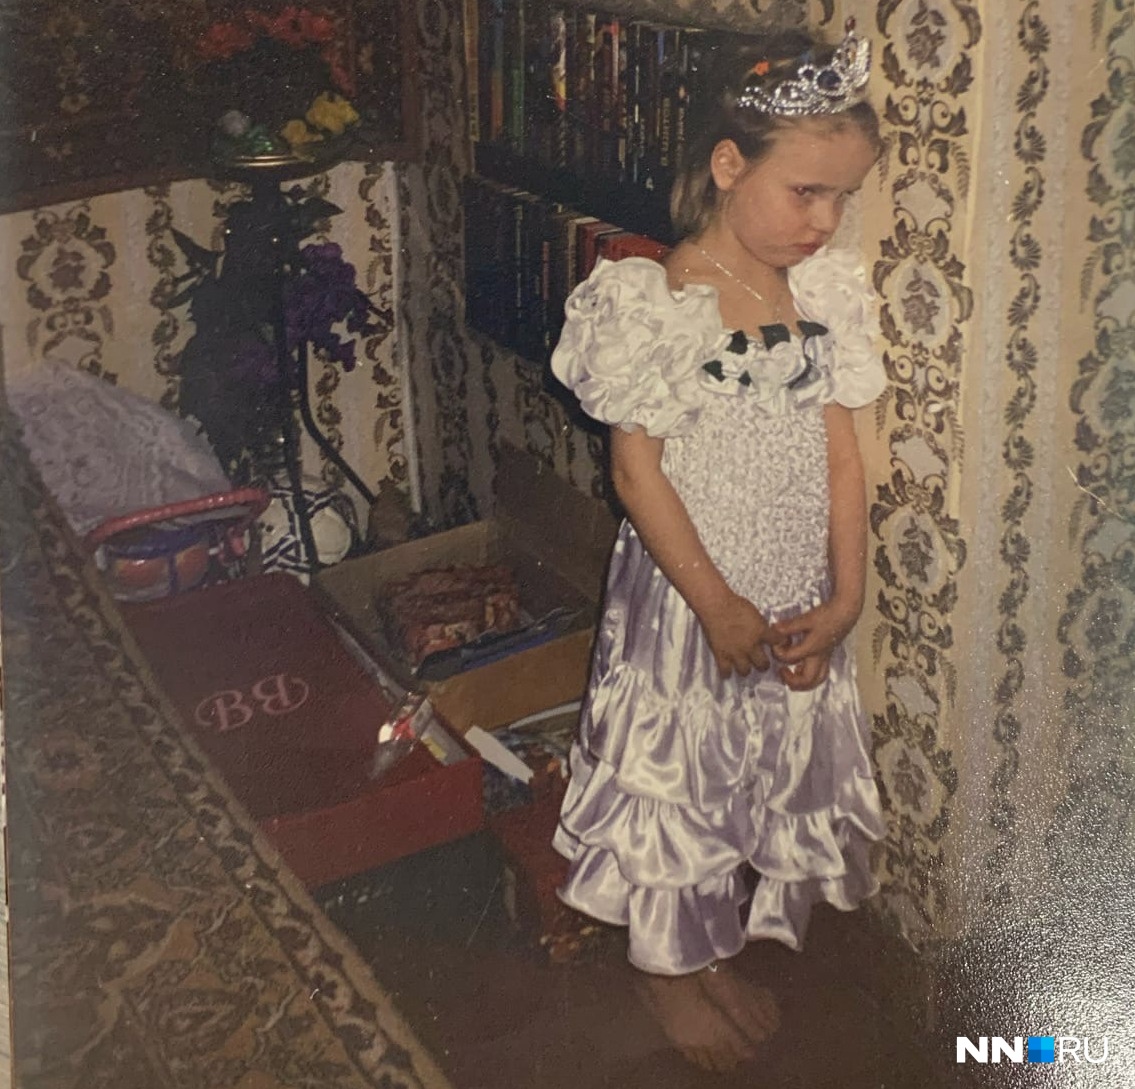 Фотография с семейного праздника. Как вспоминает Людмила, на фото «попалось» Дашино недовольство. Девочку расстроили ее туфельки. Она не хотела их надевать